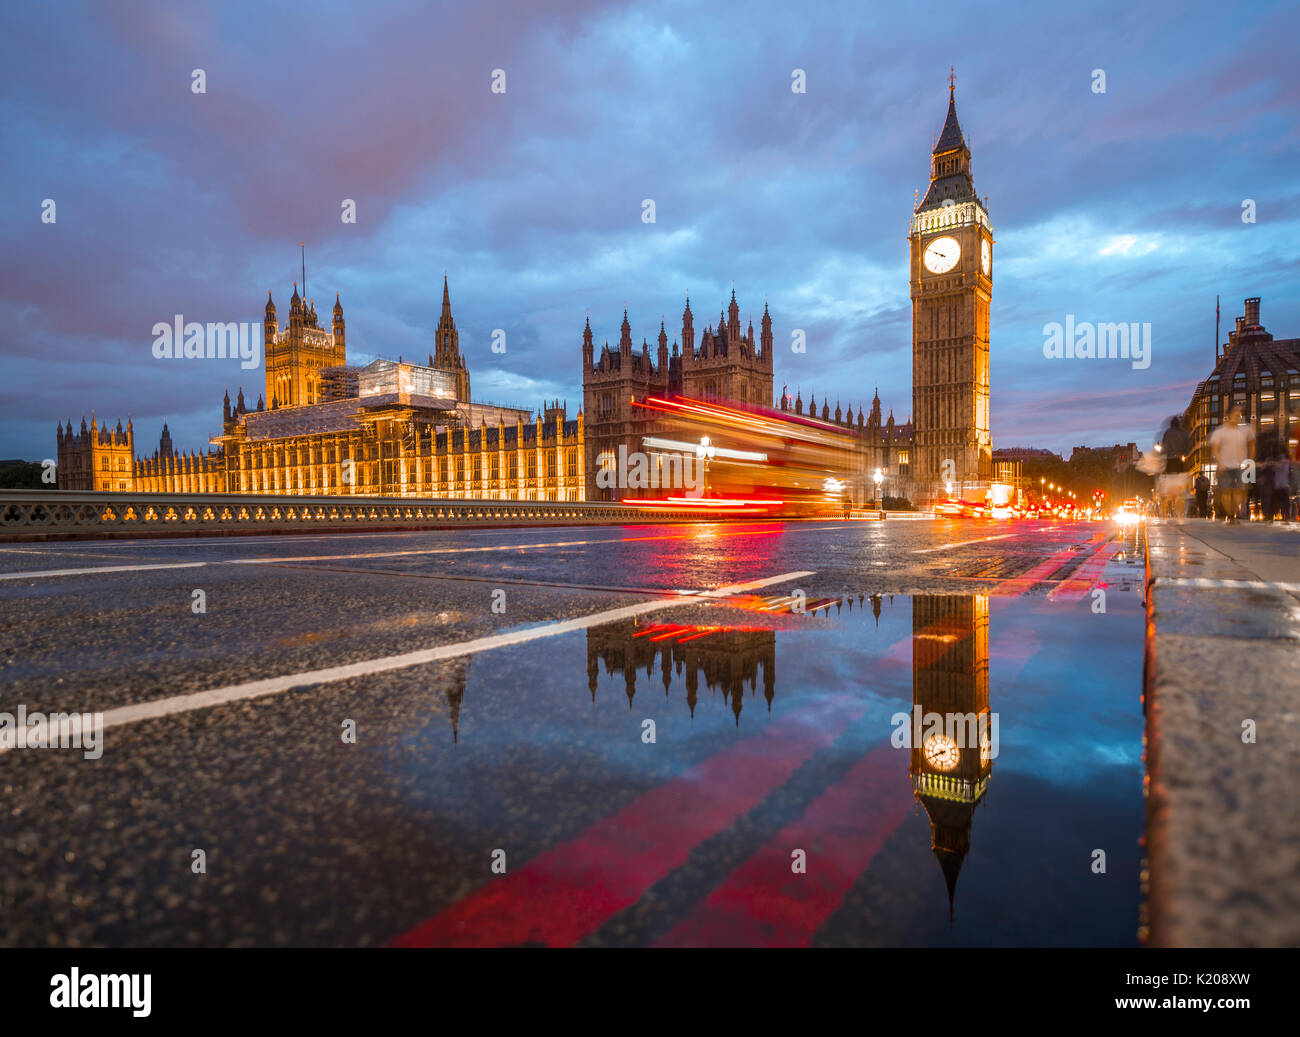 Tracce di luce, doppio ponte di bus, Westminster Bridge, Palazzo di Westminster, la Casa del Parlamento con la riflessione, Big Ben Foto Stock